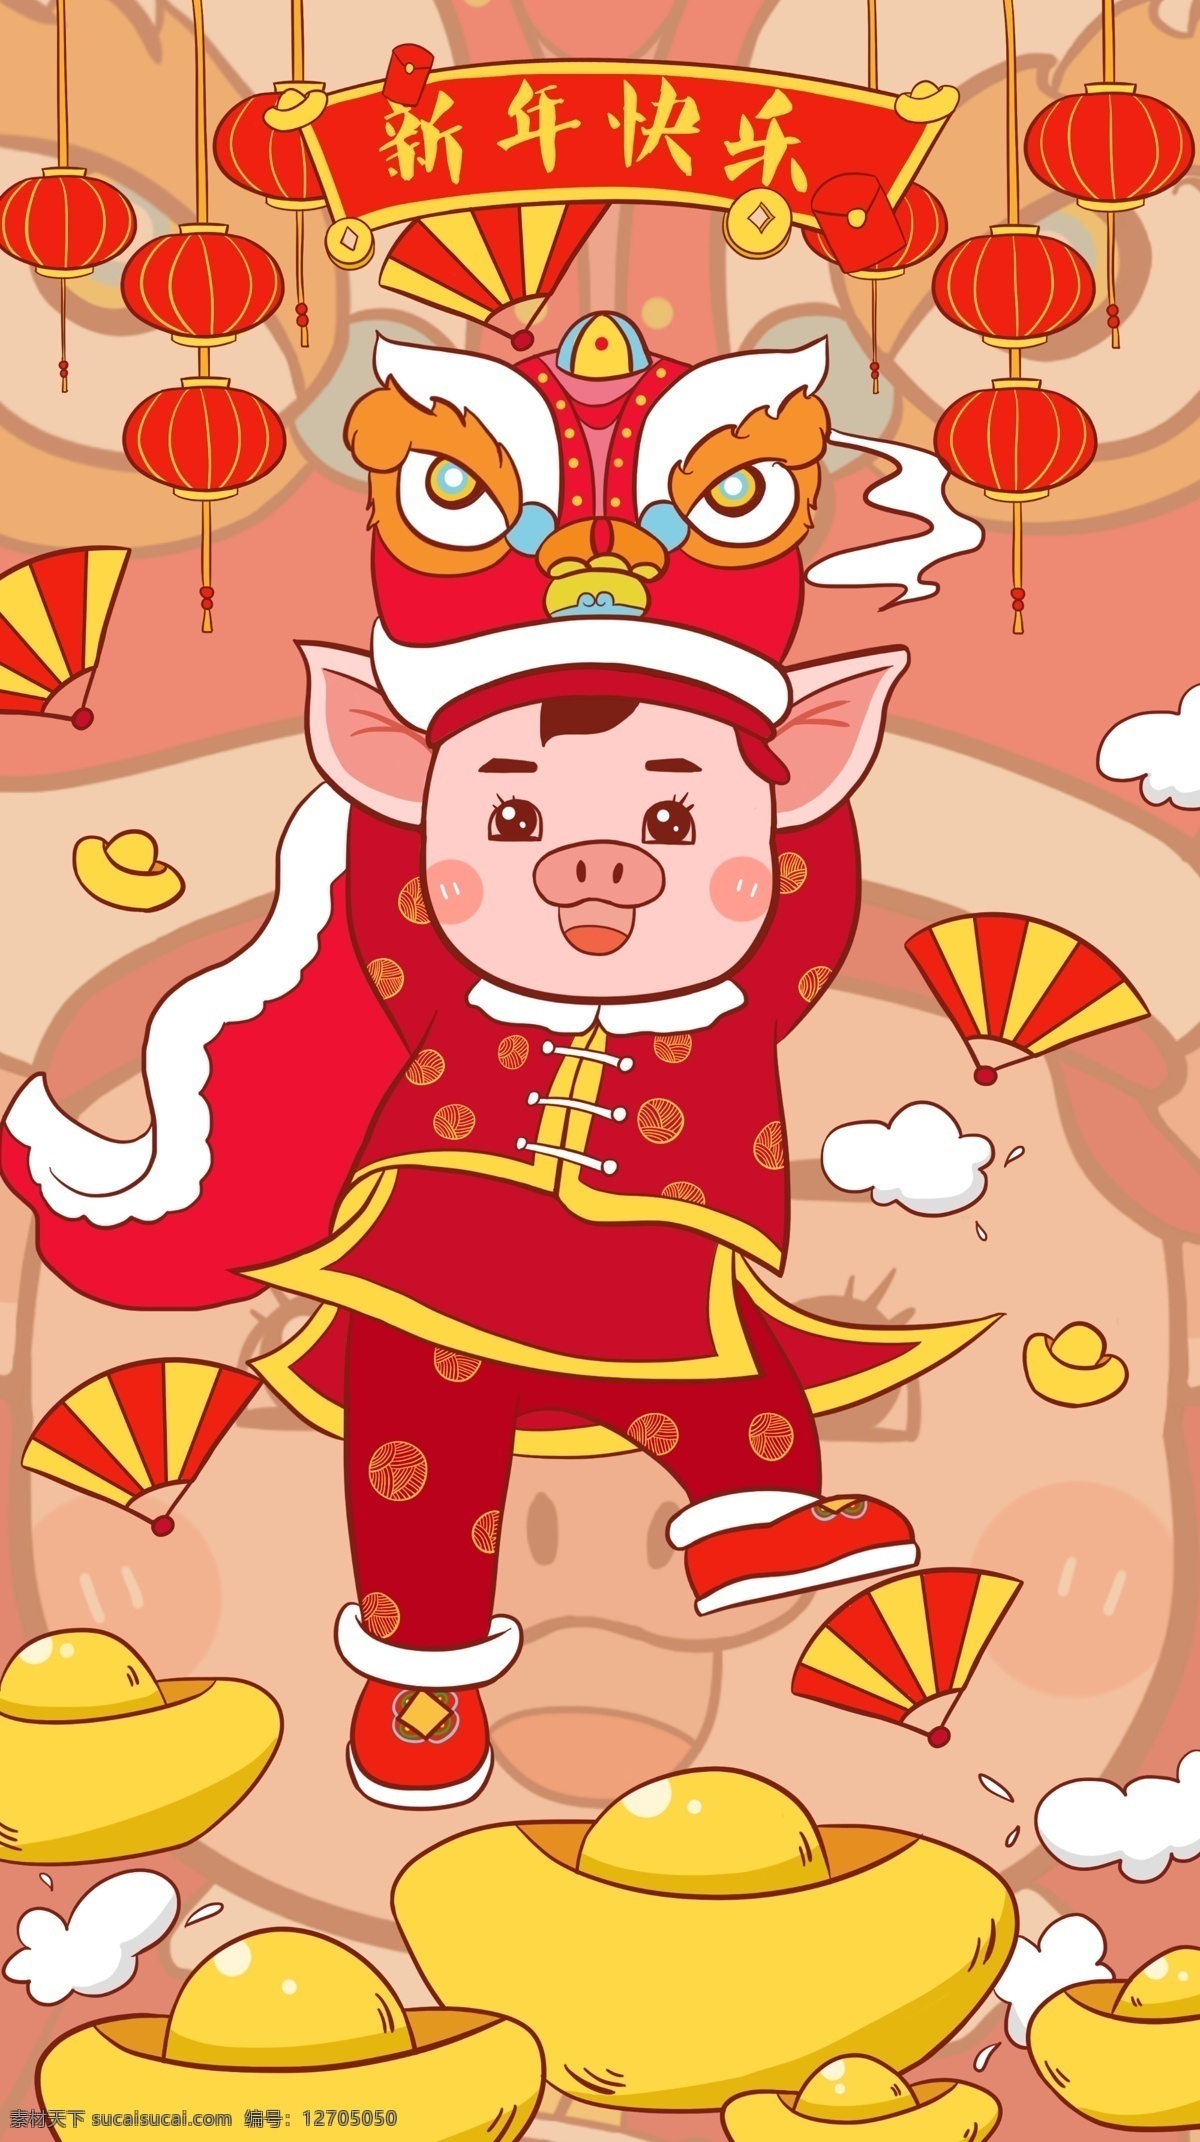 潮 漫 卡通 新年 快乐 可爱 猪 插画 舞狮 元宝 灯笼 潮漫 猪年 红火